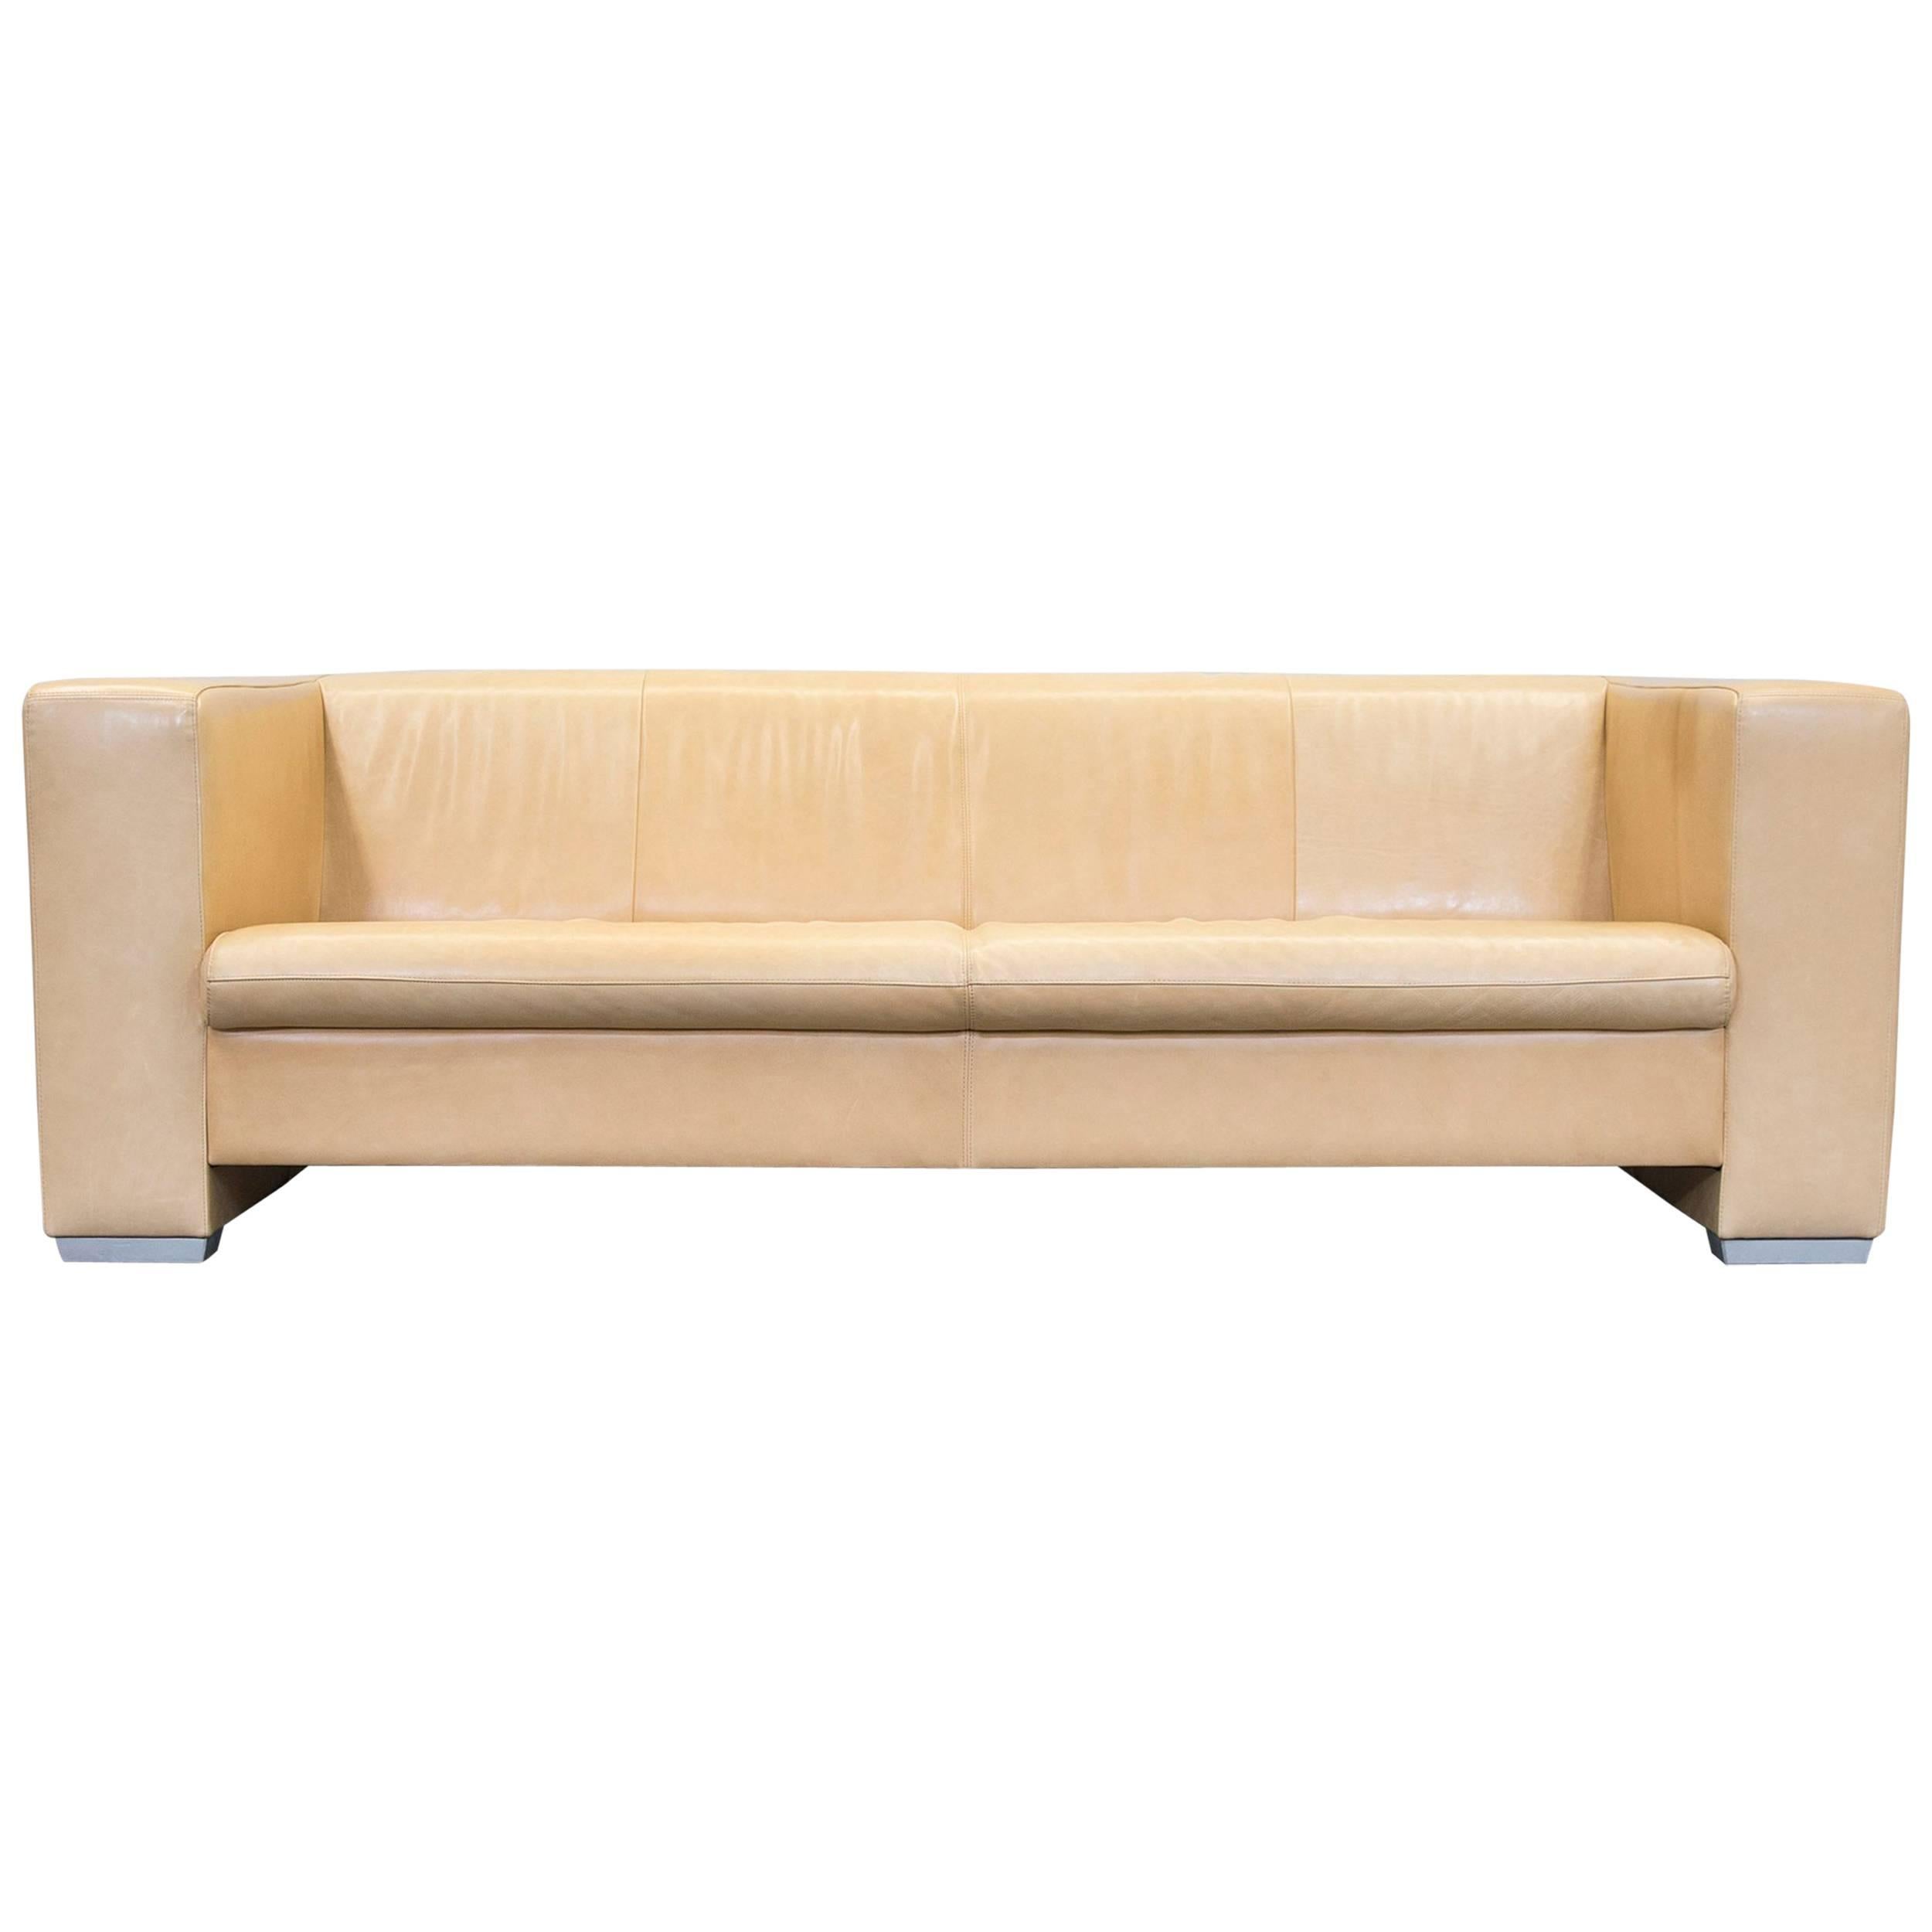 Machalke Designer Sofa Leather Crème Beige Three-Seat Couch Modern